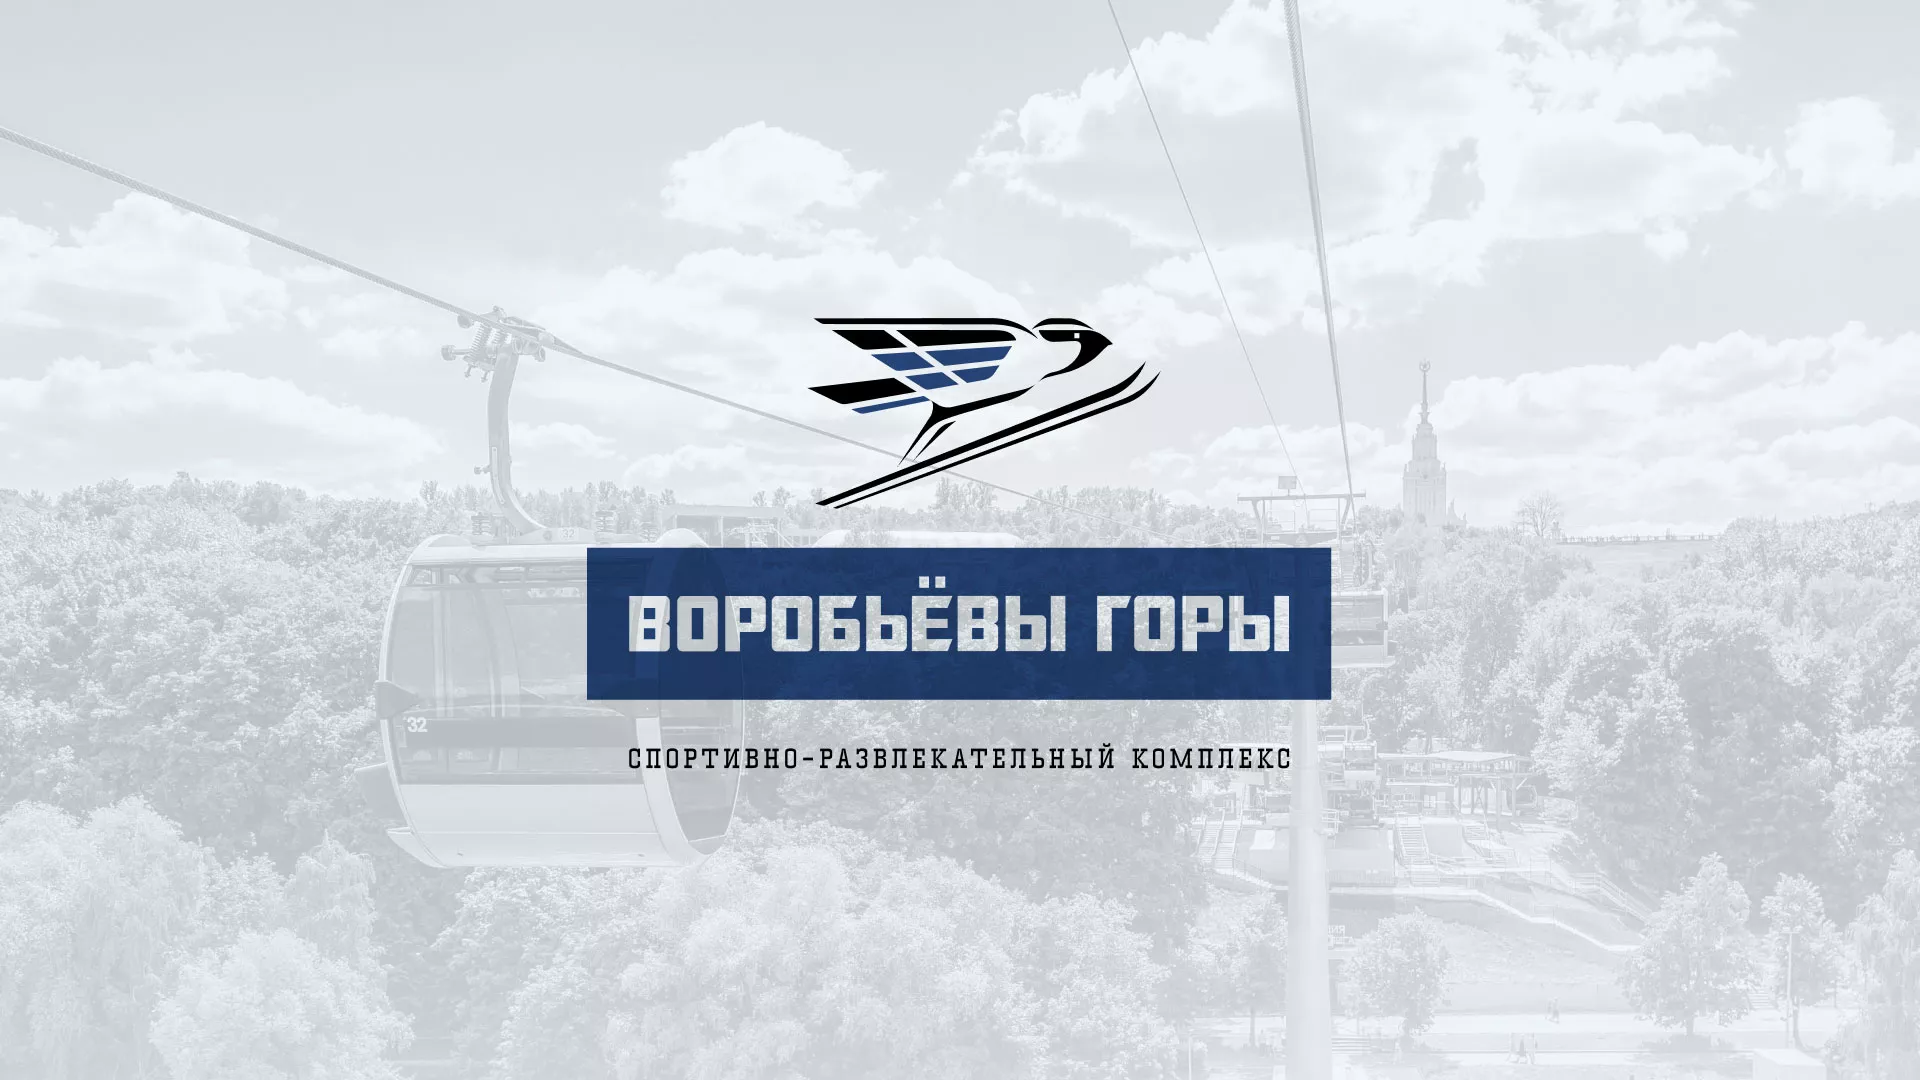 Разработка сайта в Каменск-Шахтинске для спортивно-развлекательного комплекса «Воробьёвы горы»